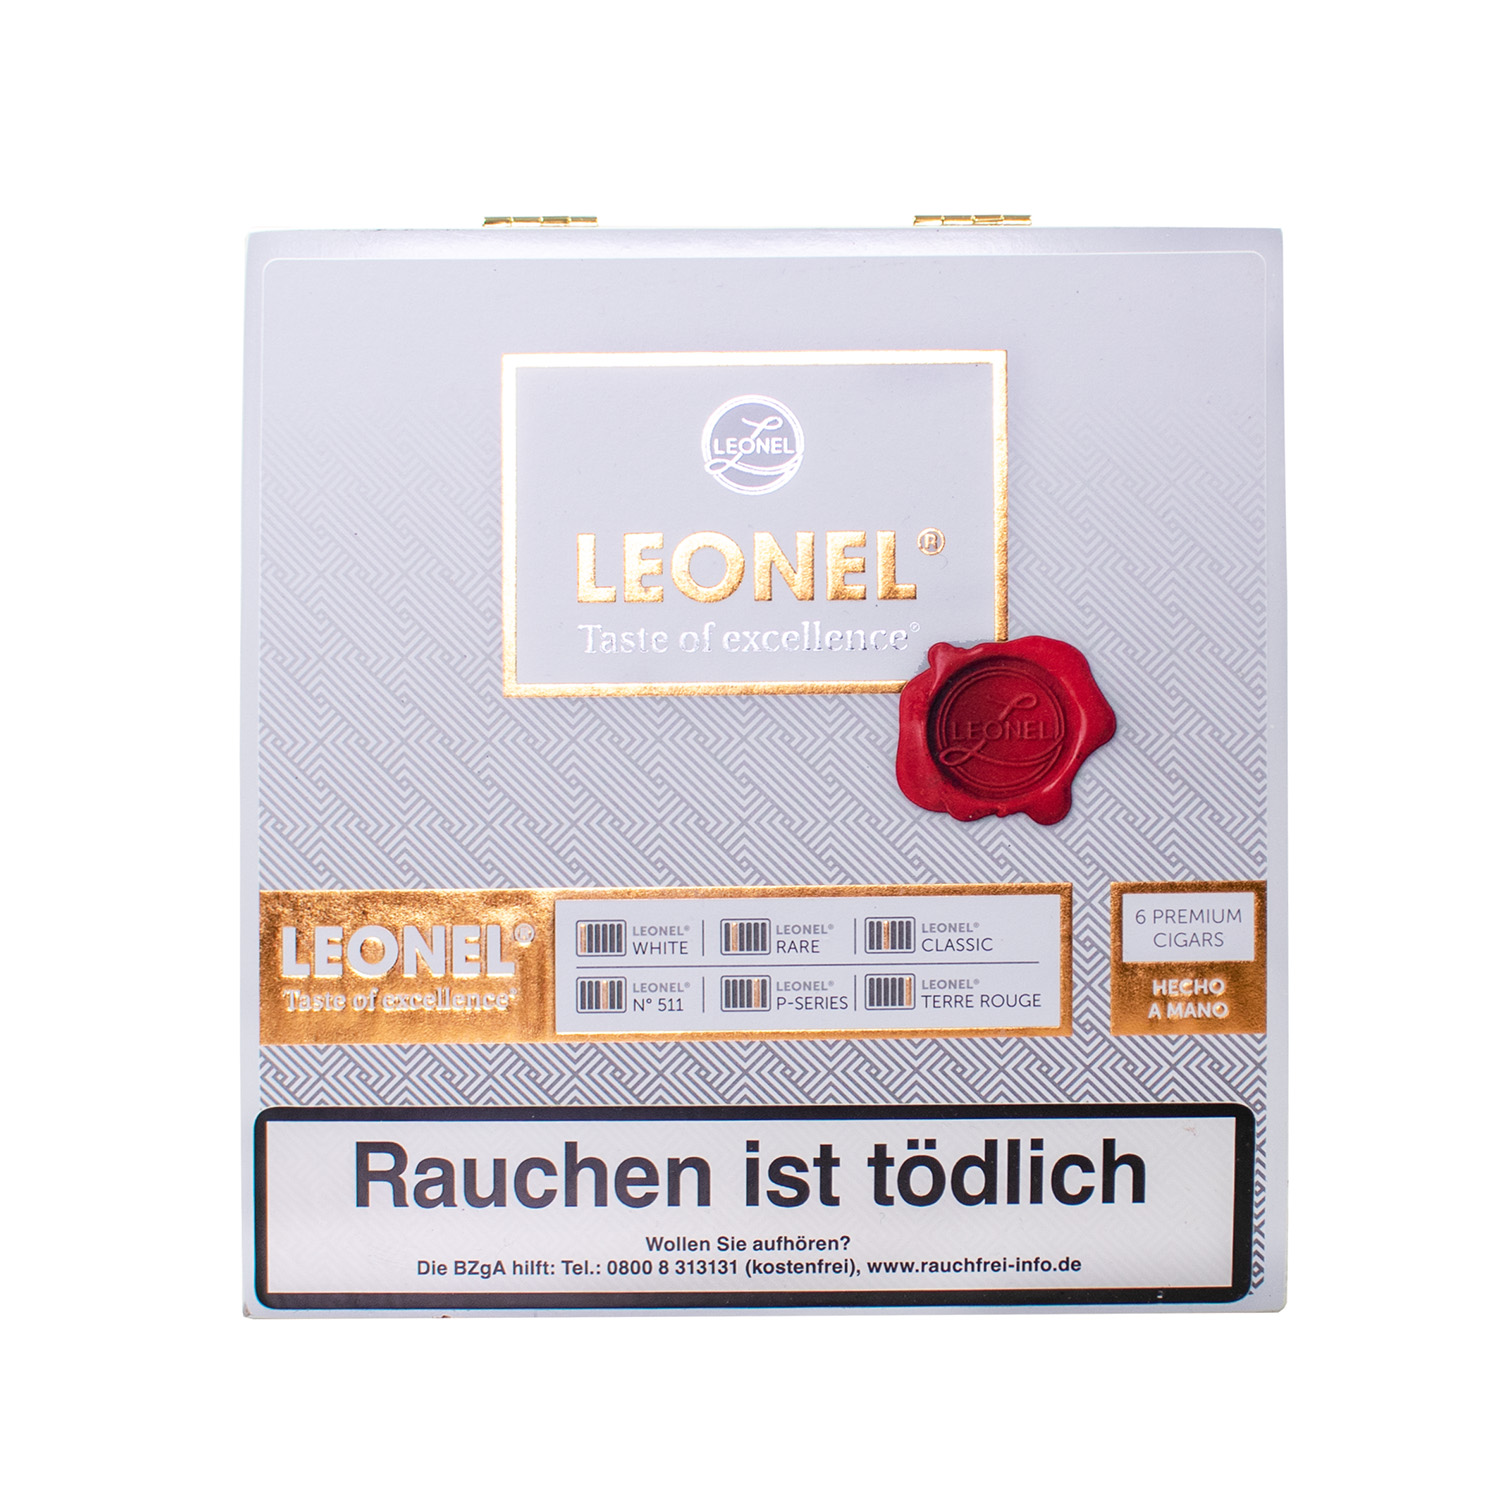 Leonel Taste of Excellence Sampler - Gift Box